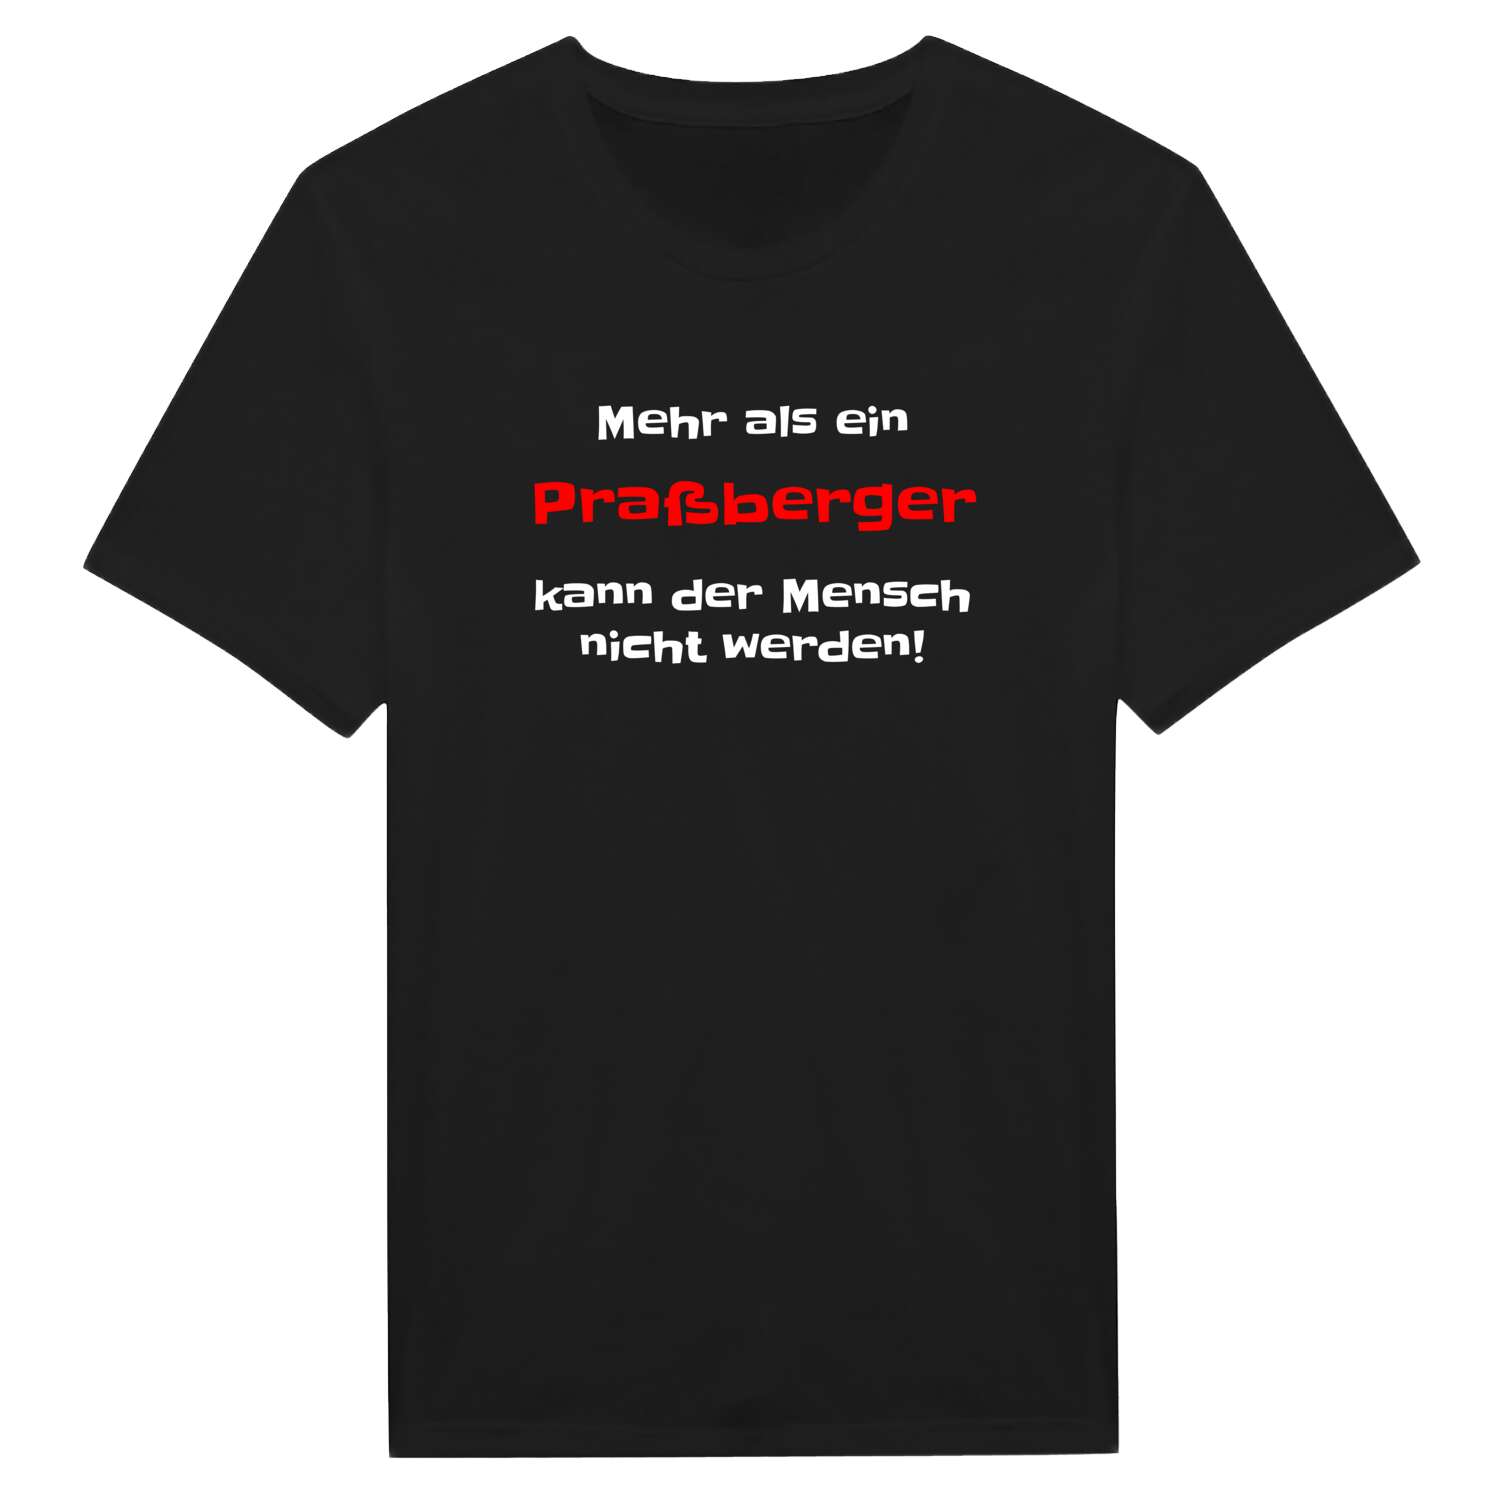 Praßberg T-Shirt »Mehr als ein«